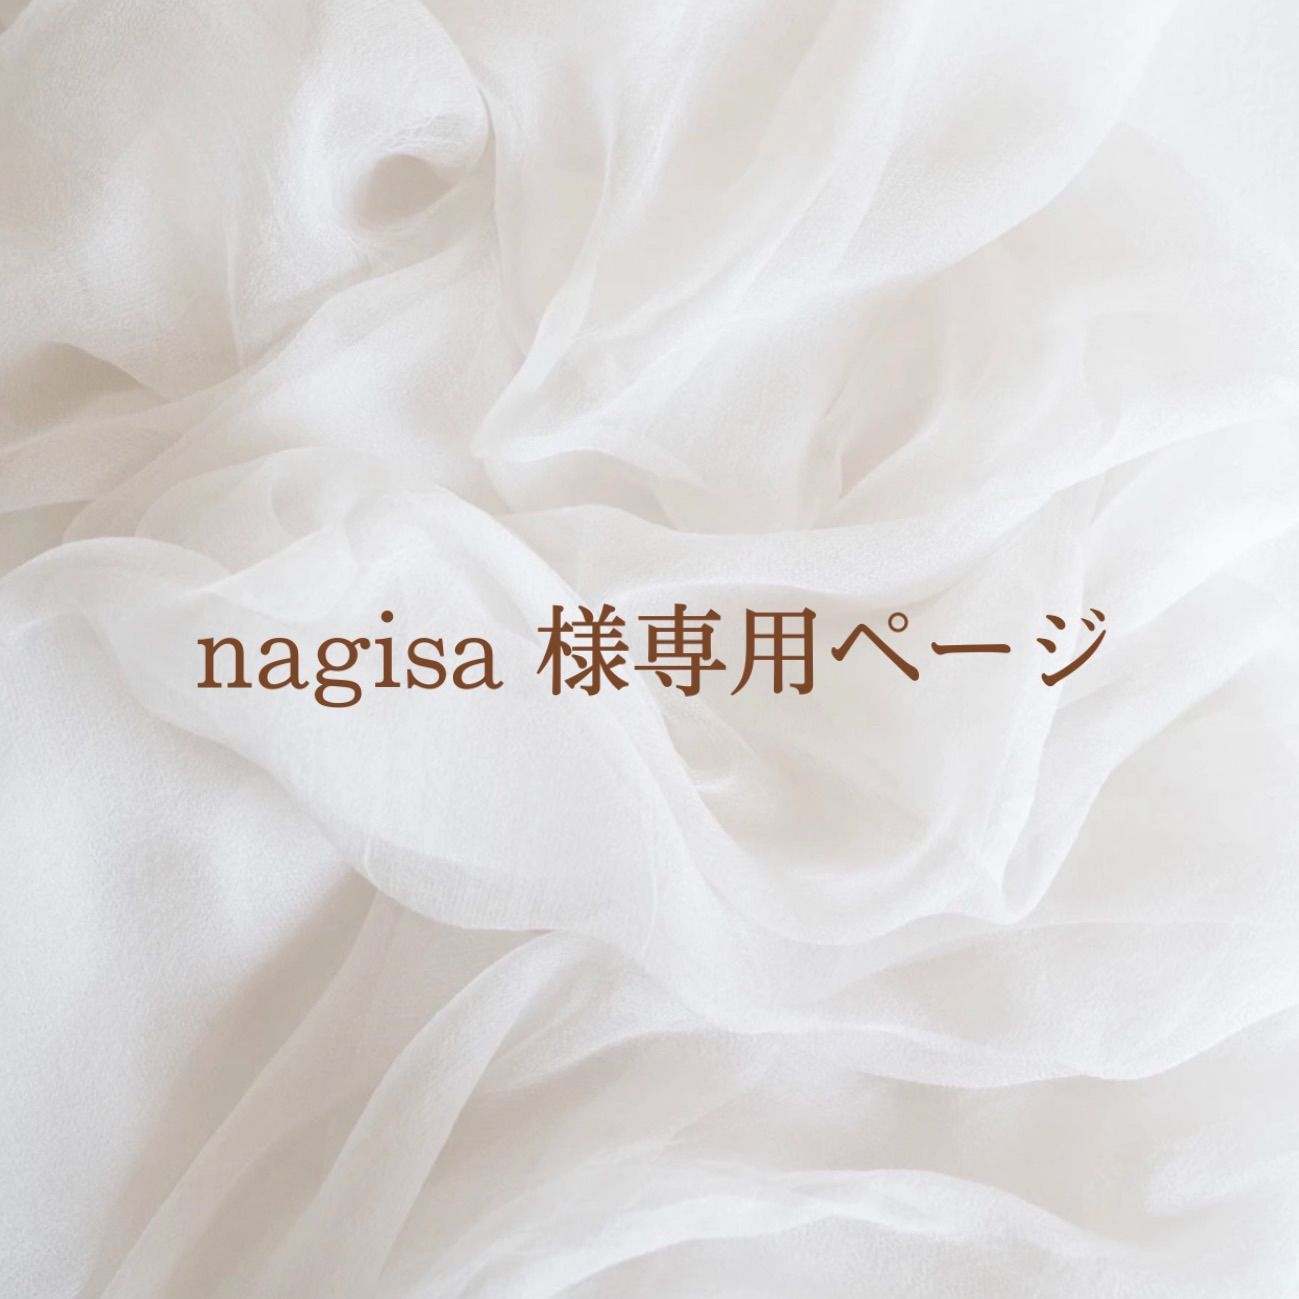 nagisa 様専用ページ - a's y's アクセサリー - メルカリ